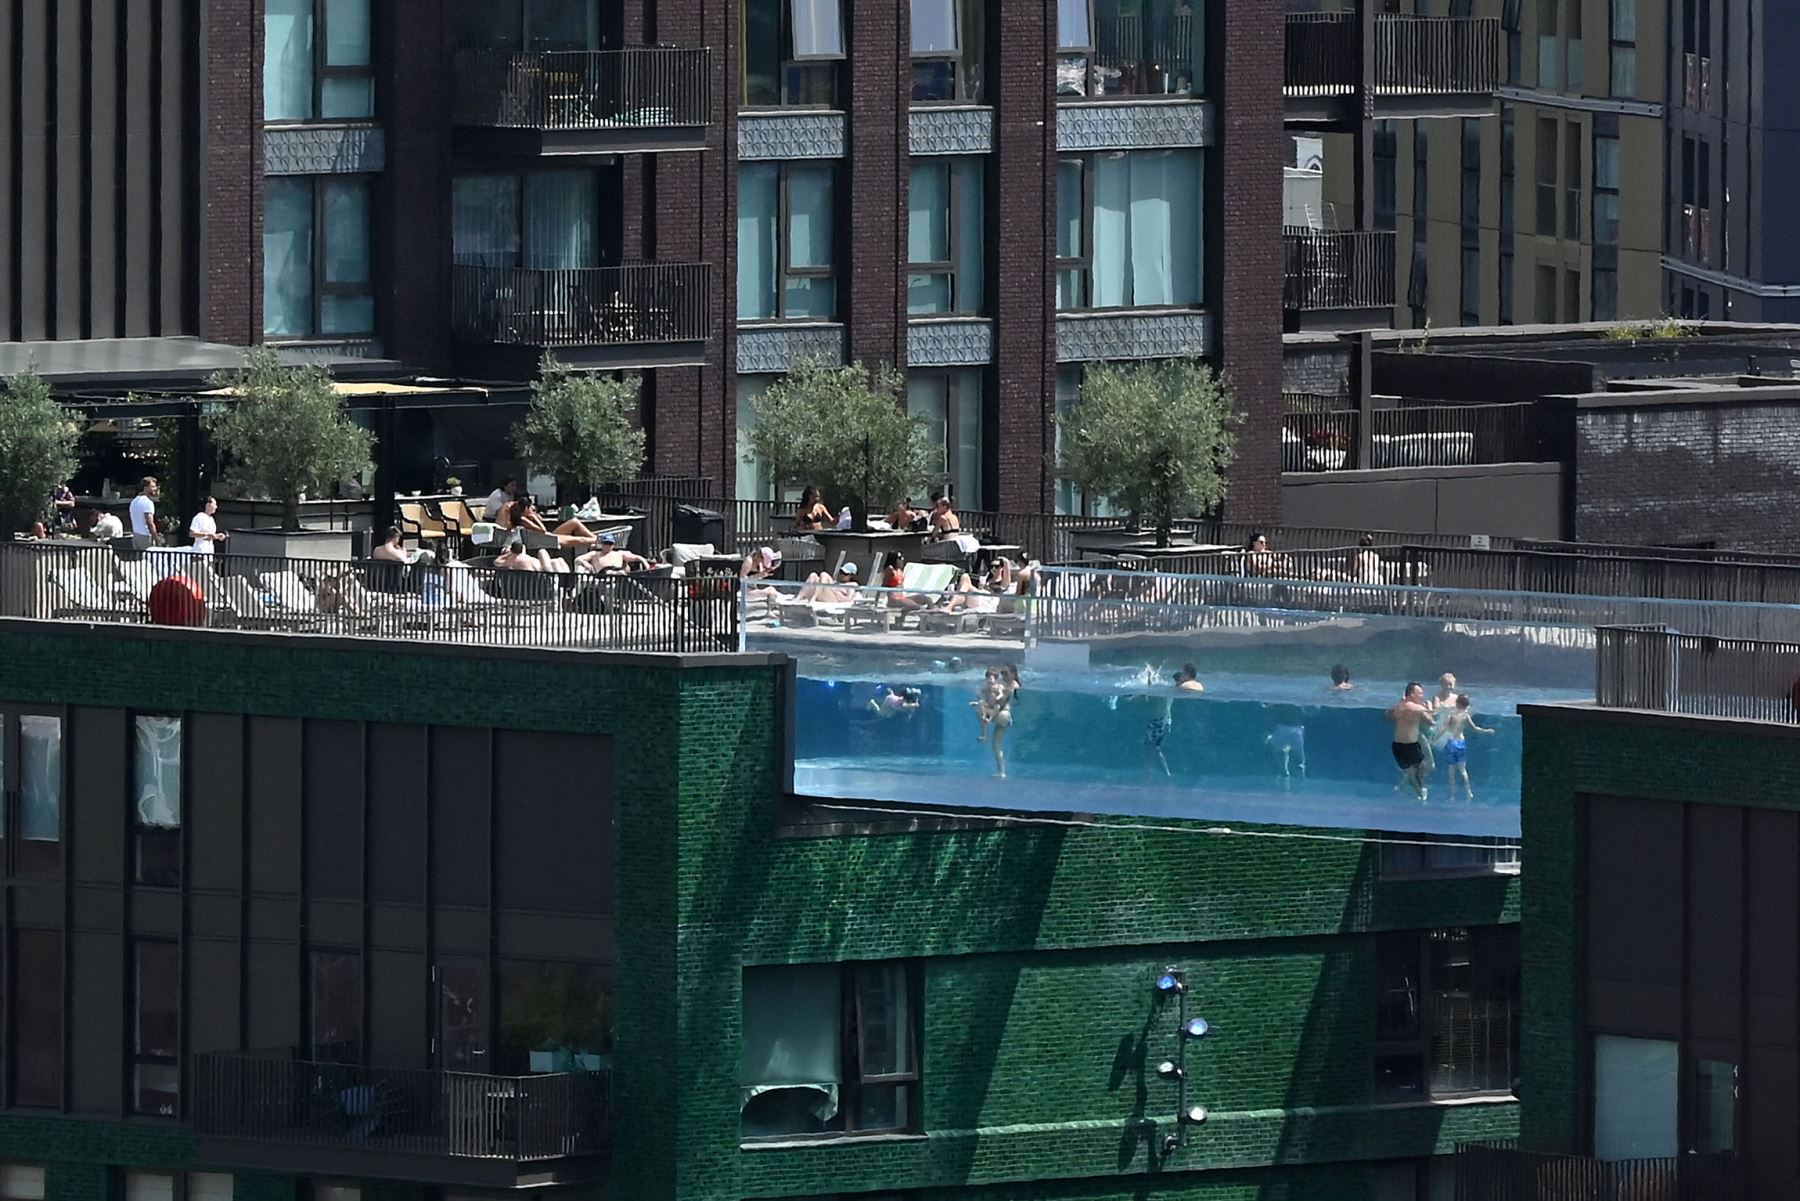 La gente nada en Sky Pool, un puente de piscina de acrílico transparente que se fija entre dos bloques de apartamentos, en Embassy Gardens en el suroeste de Londres.
Foto: AFP